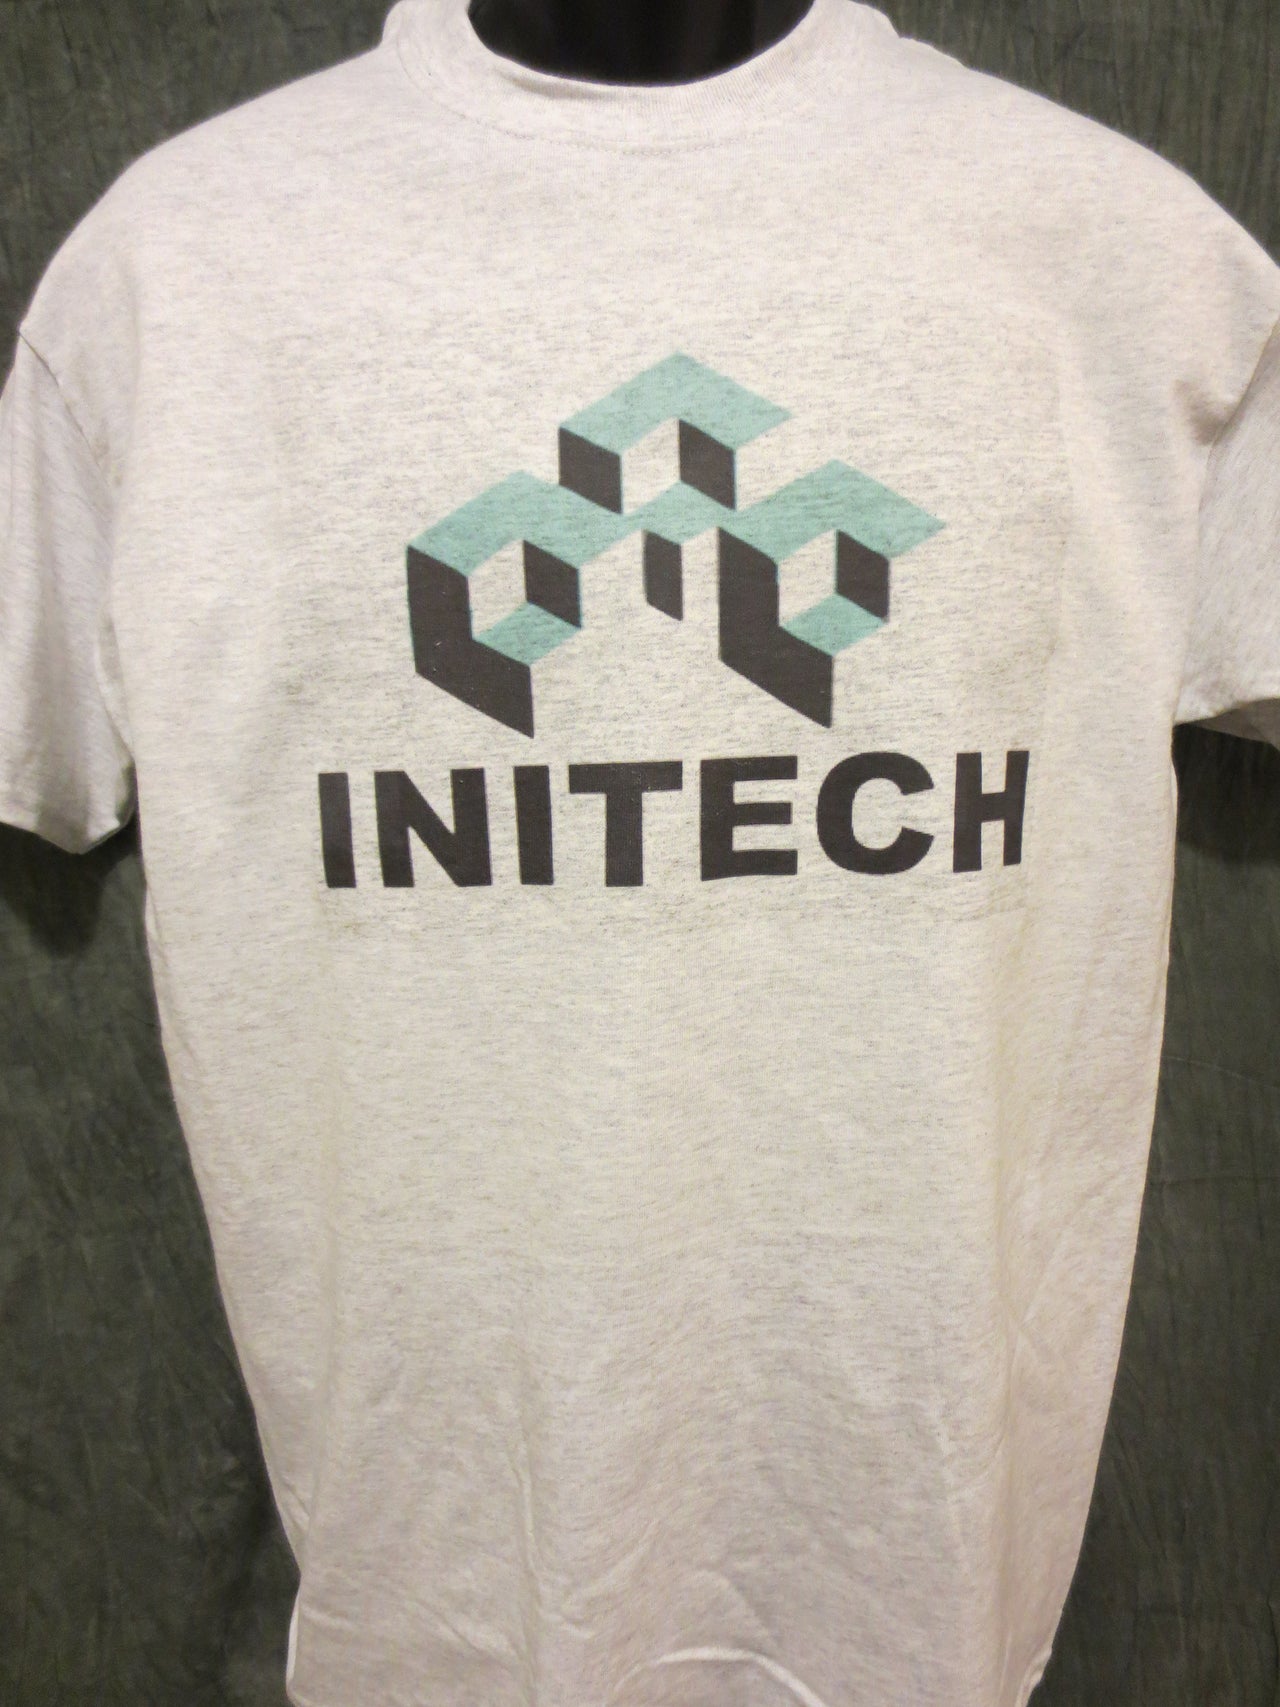 Initech Tshirt and Mug Comb - TshirtNow.net - 3